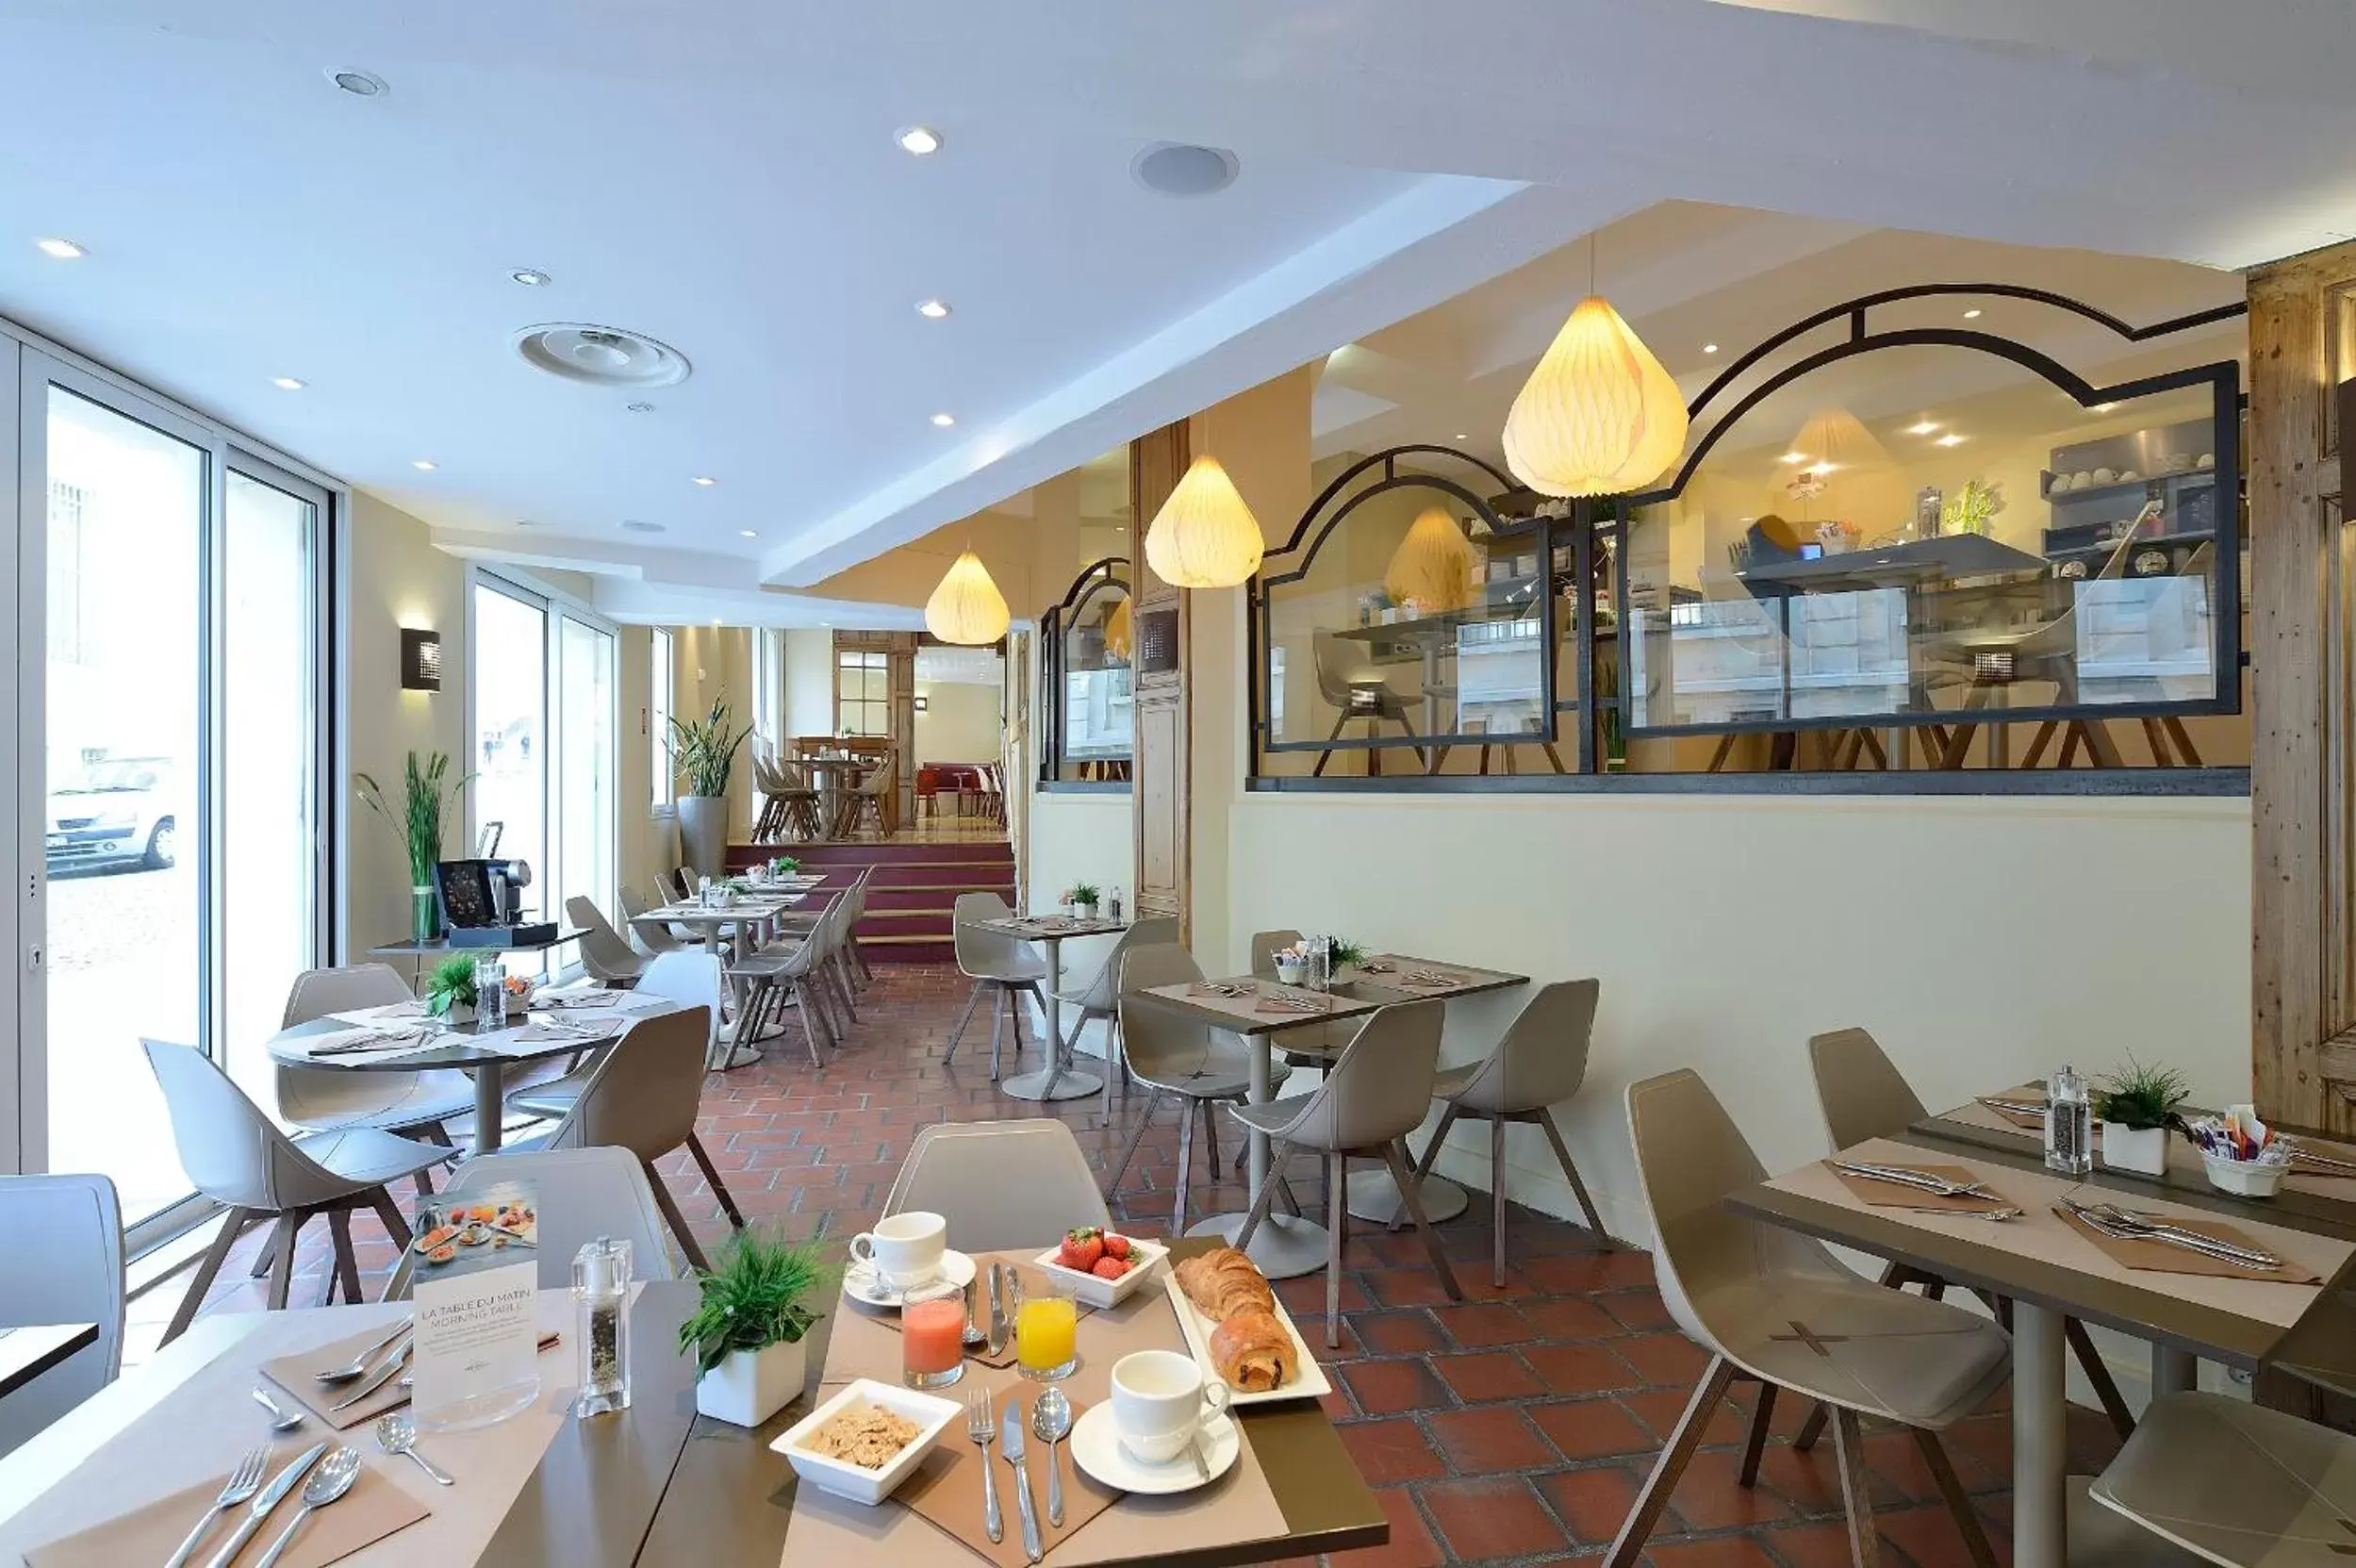 Buffet breakfast, Restaurant/Places to Eat in Mercure Avignon Centre Palais des Papes